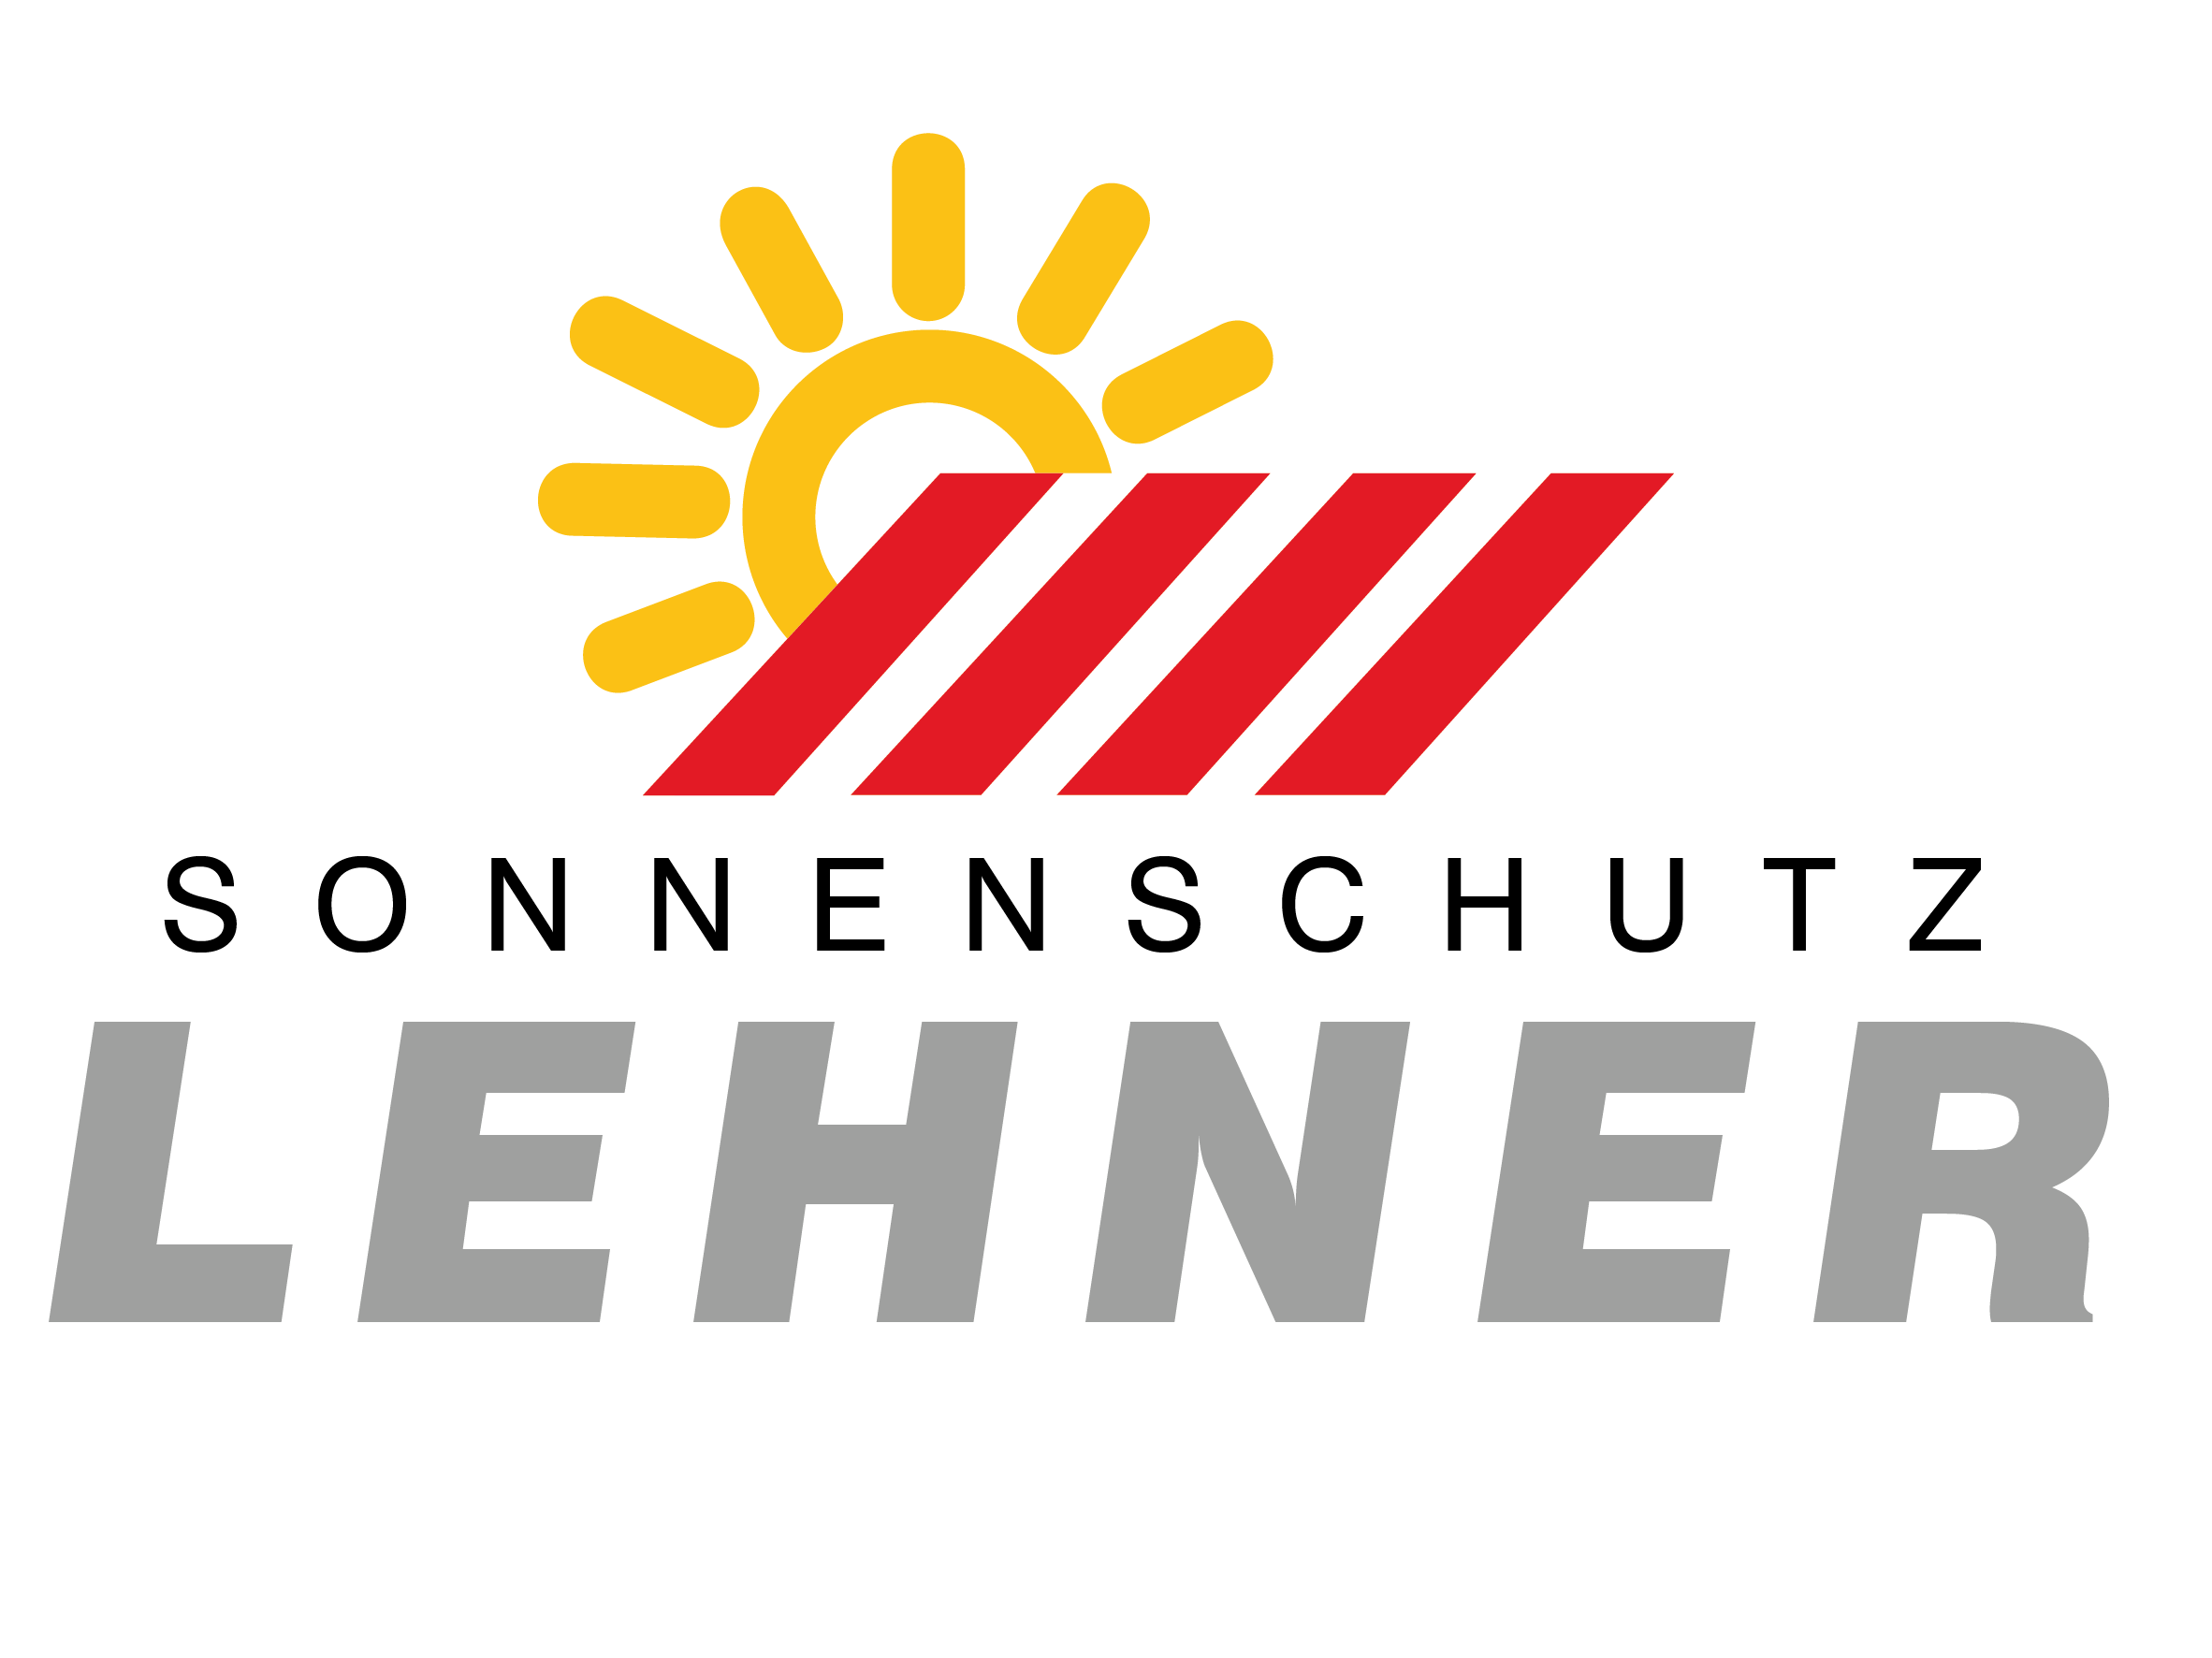 (c) Sonnenschutz-lehner.at